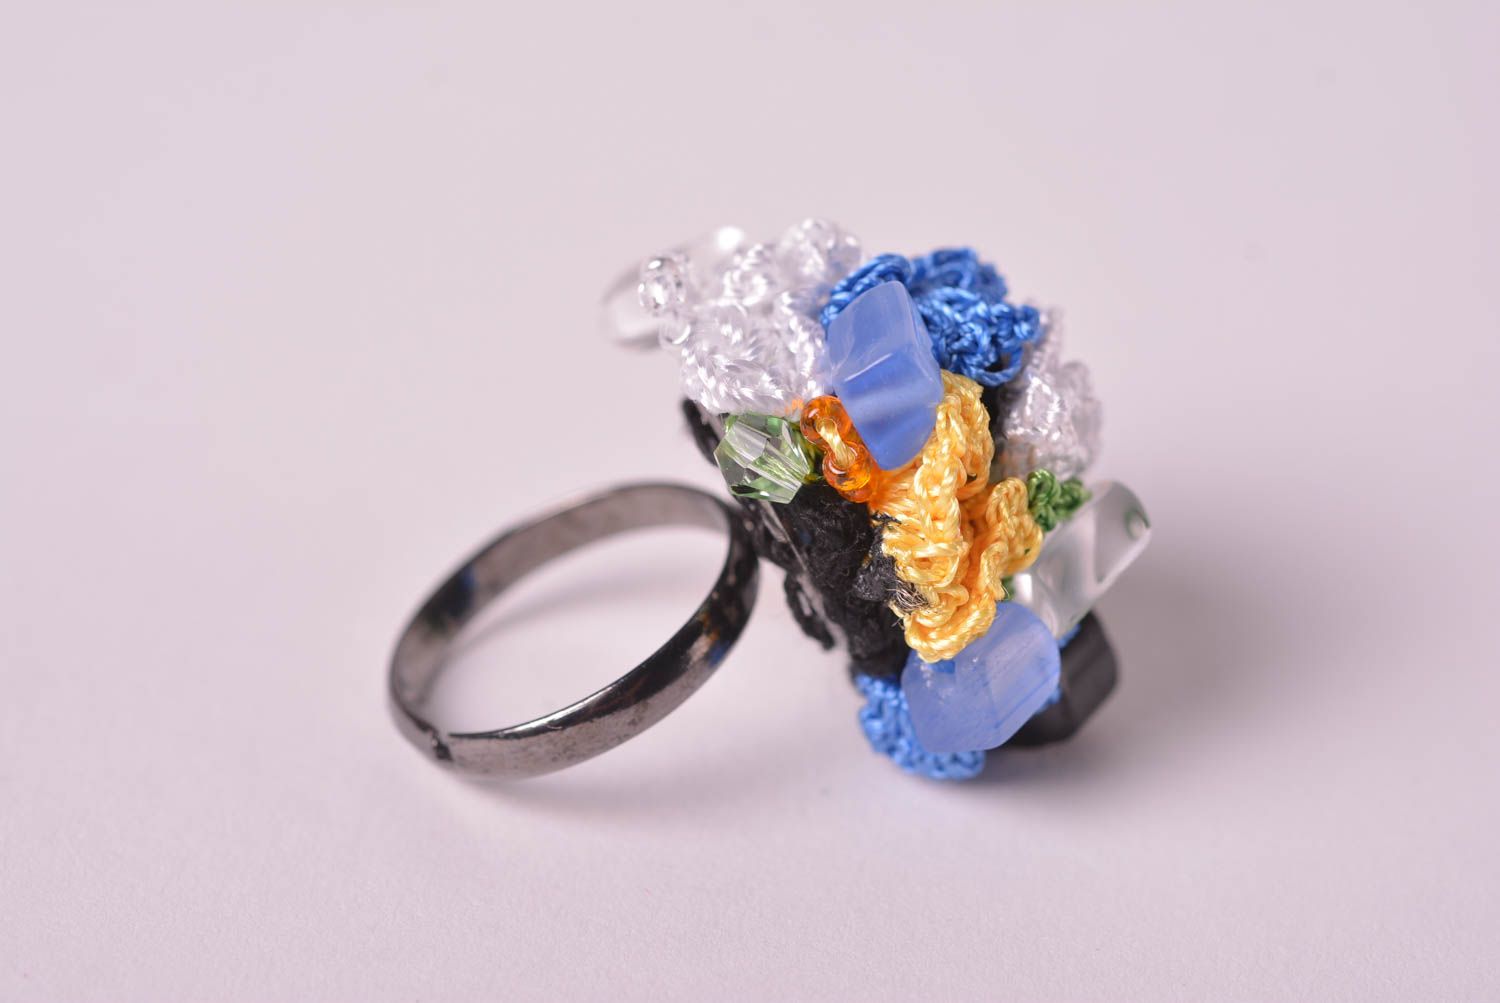 Вязаное украшение кольцо ручной работы бижутерия кольцо из вискозы и шелка фото 2